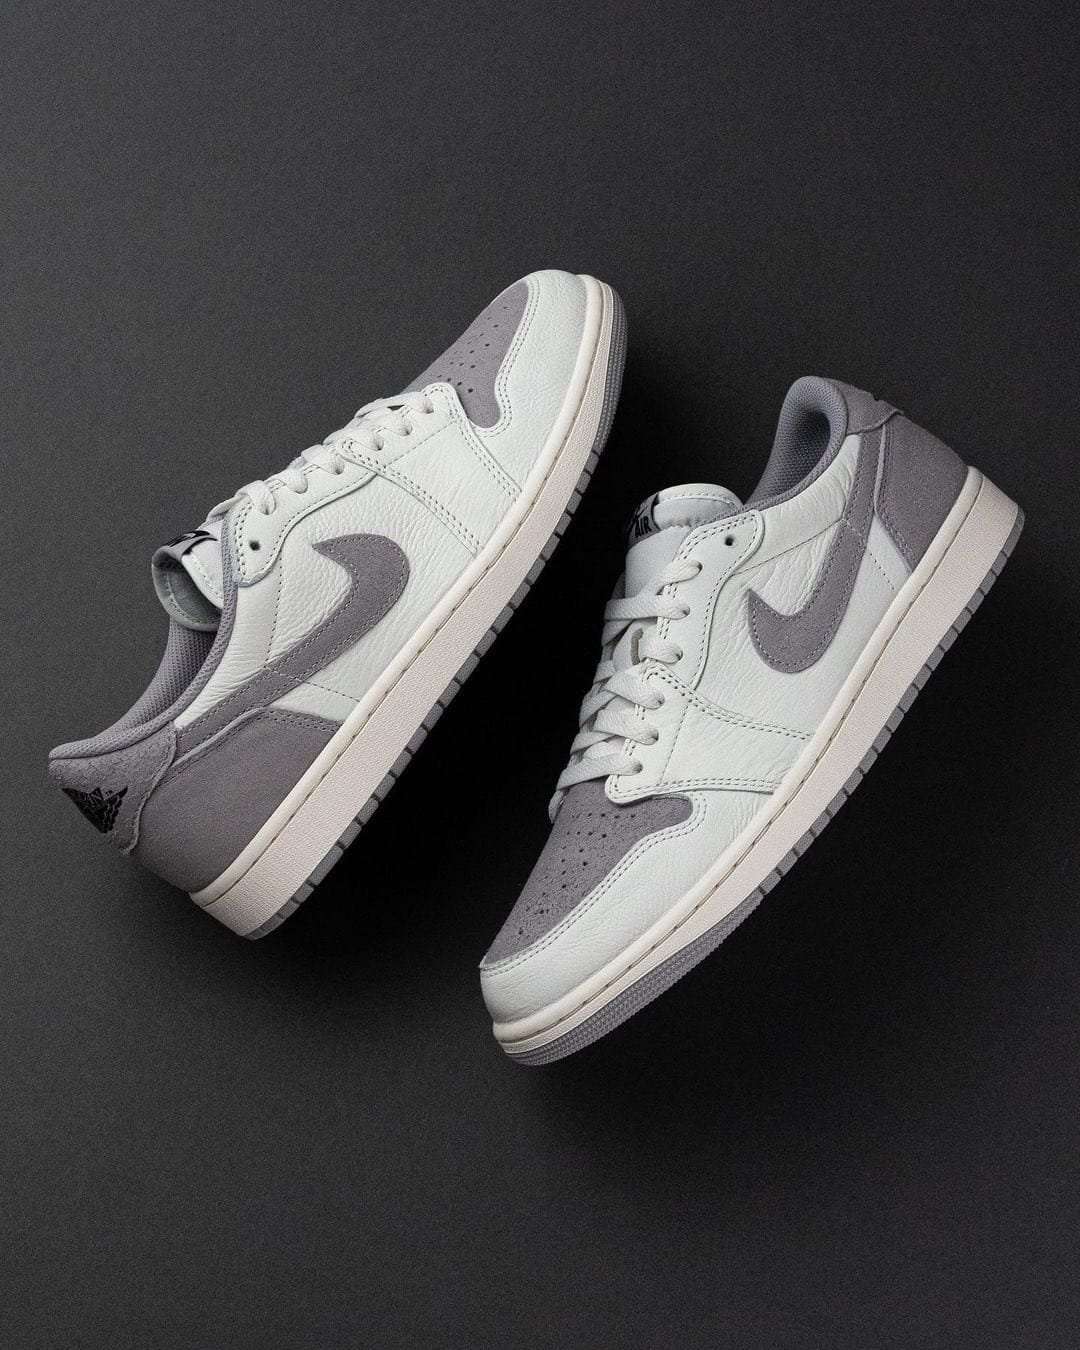 7A Quality Nike Jordan Low OG Atmosphere Grey Shoes For Men